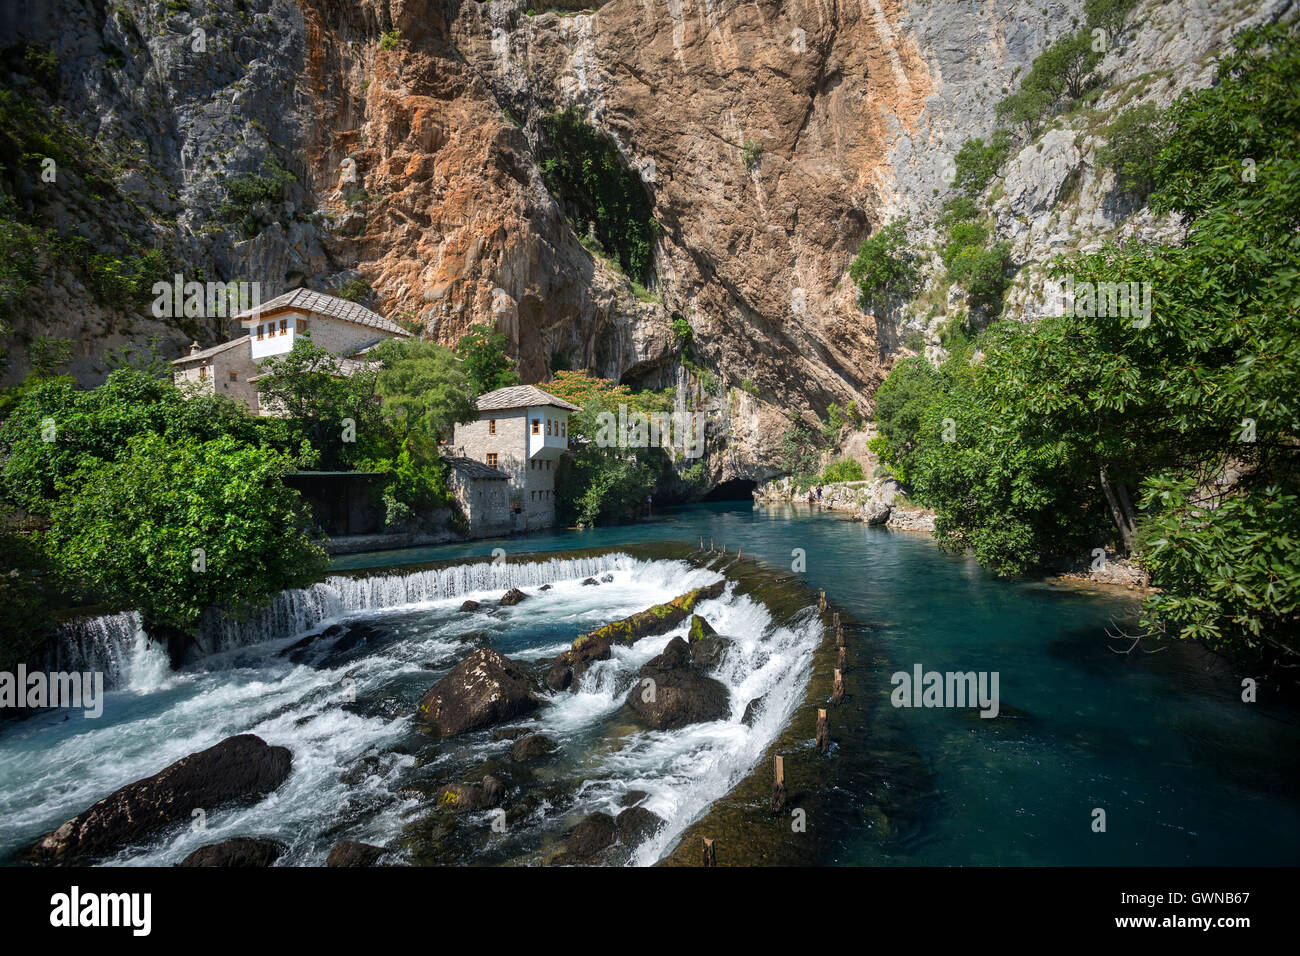 Die karstige Quelle des Flusses Buna in Blagaj und Derviche Kloster (Tekke). Bosnien - Herzegowina. Stockfoto